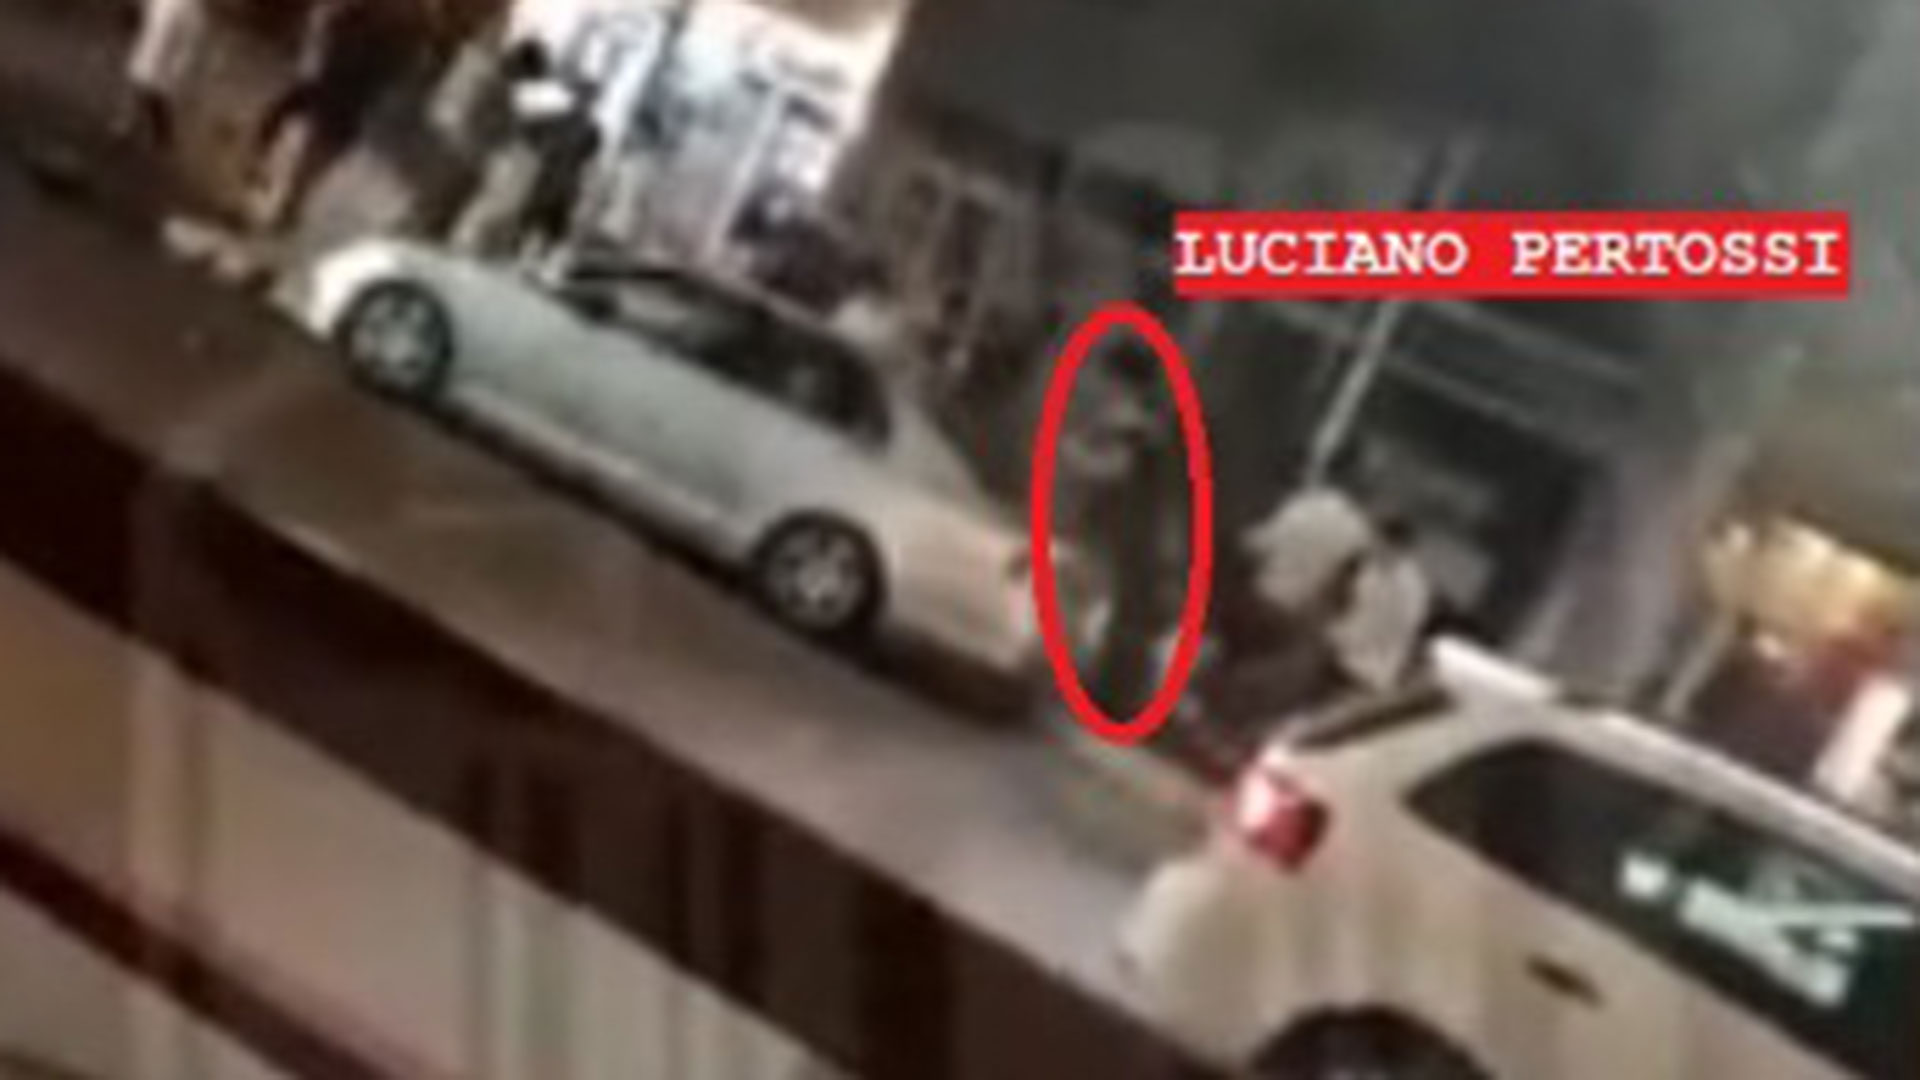 Las imágenes que muestran que Luciano Pertossi habría participado del ataque a Fernando Báez Sosa